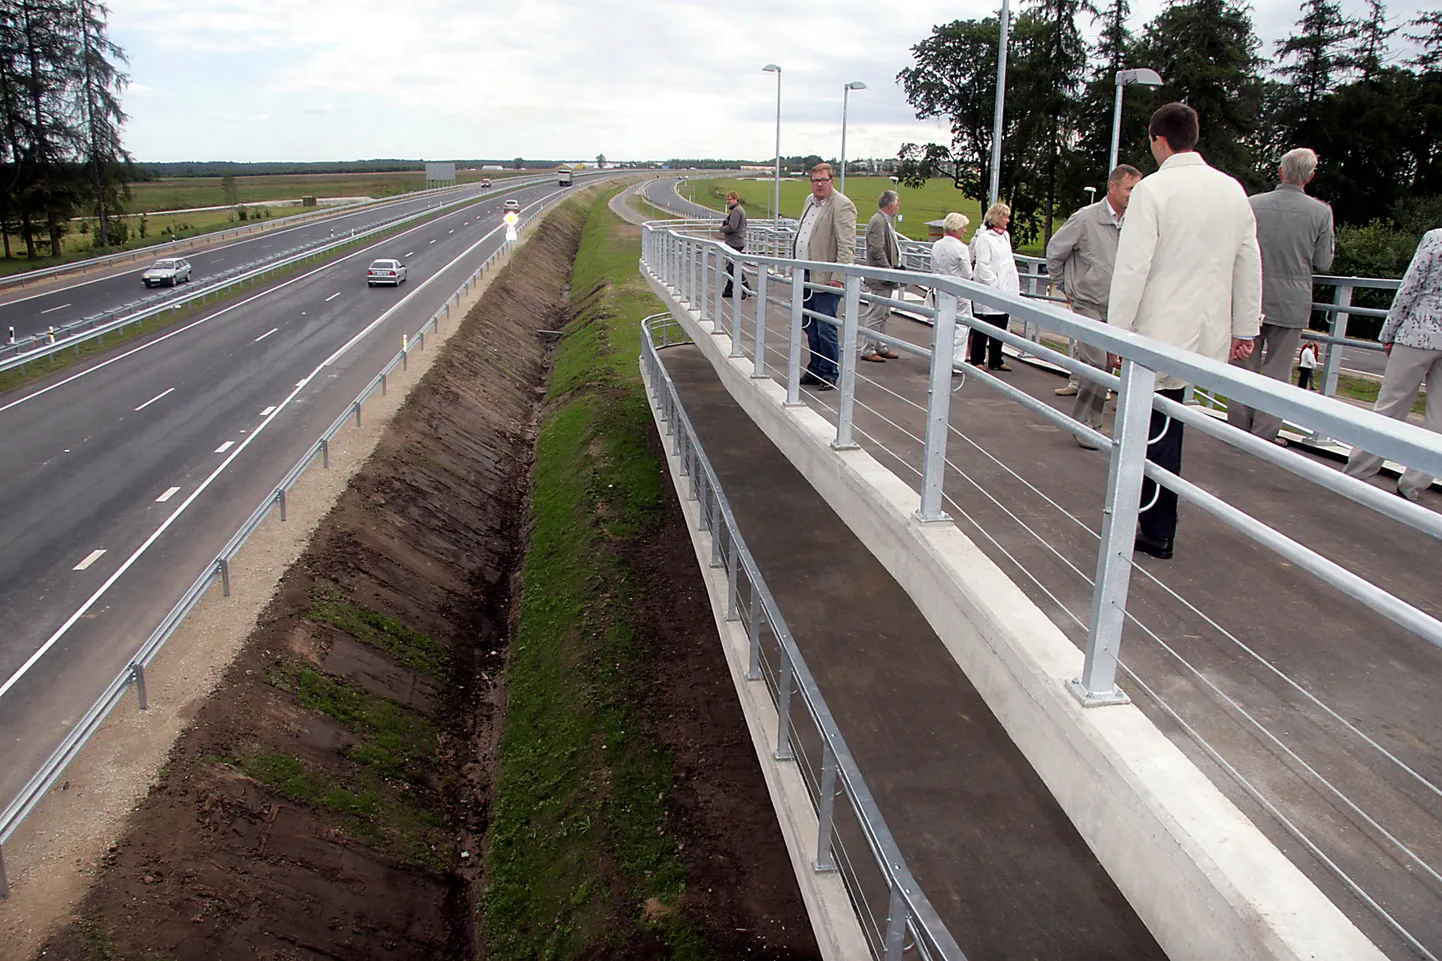 Участок между Кукрузе и Йыхви, строительство которого длилось более десяти лет, по-прежнему остается единственным местом в Ида-Вирумаа, где можно проехать по четырехполосному шоссе.